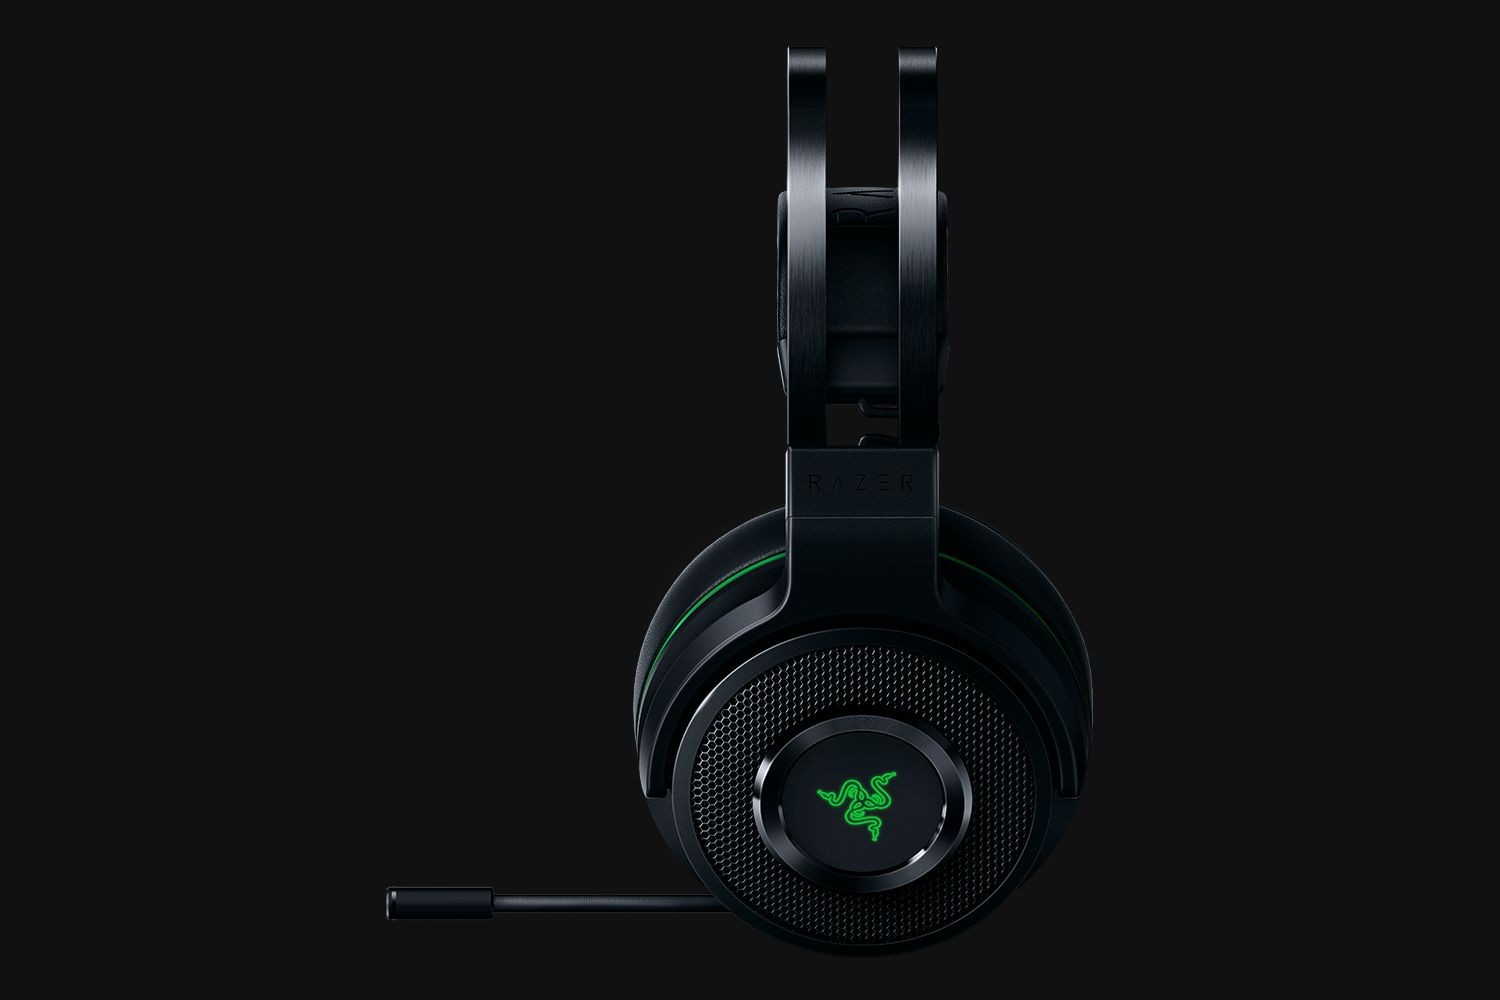 Razer Thresher - Xbox One headset